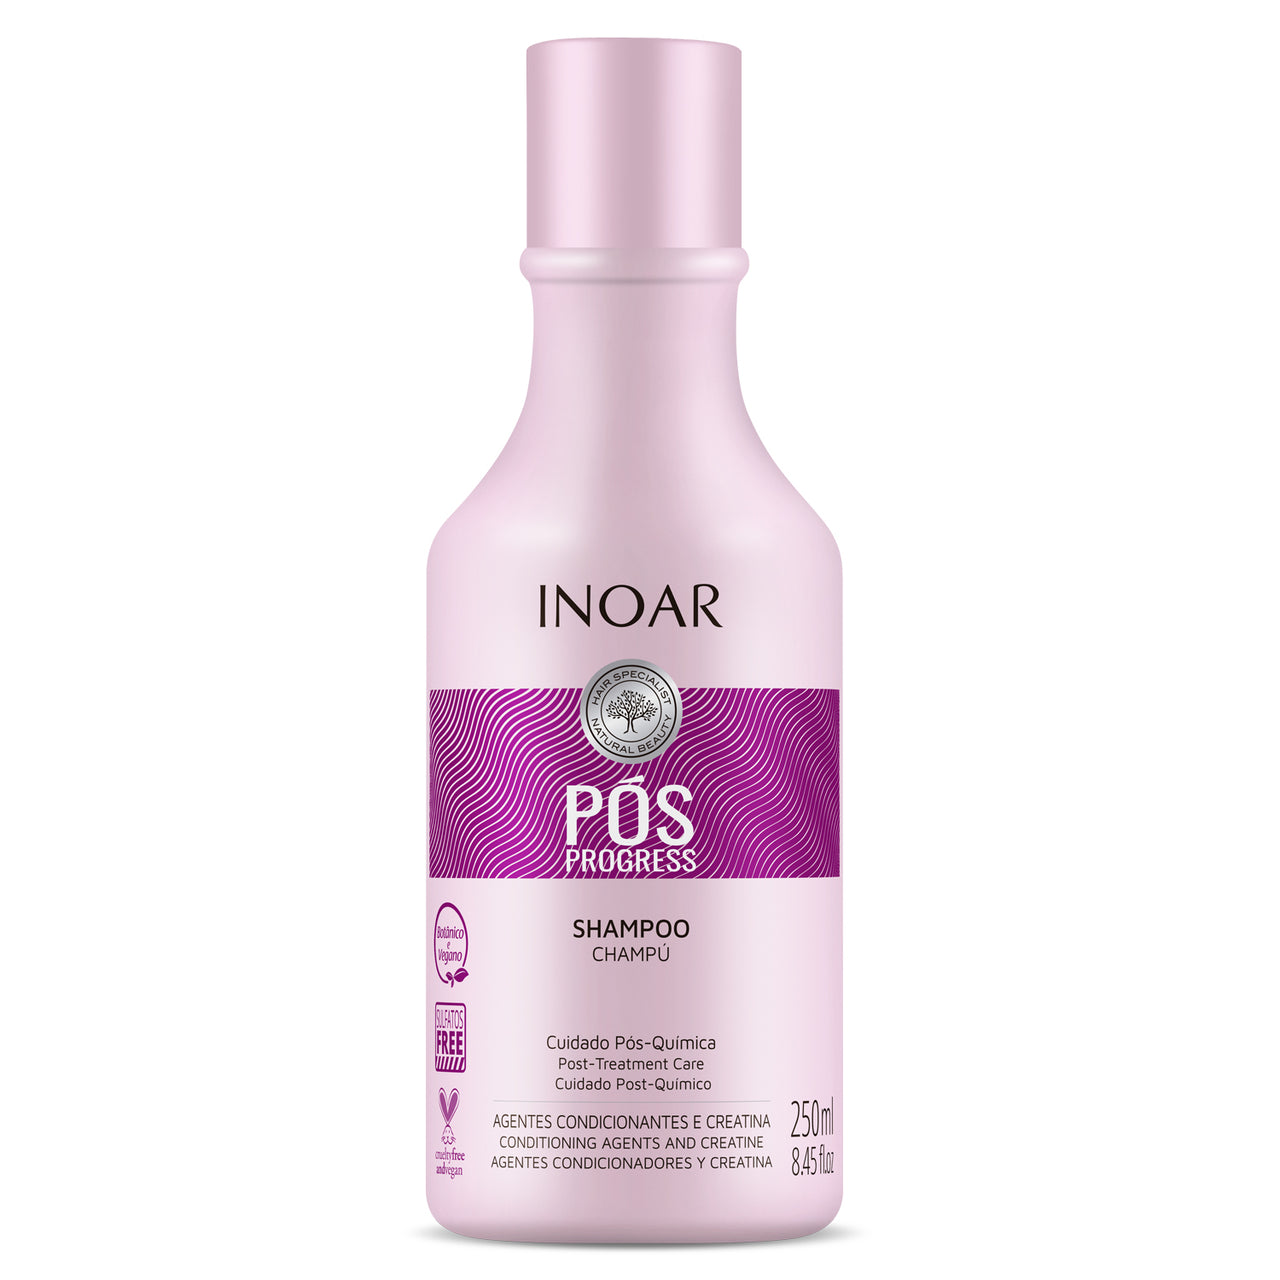 INOAR Pos Progress Shampoo - šampūnas po tiesinimo keratinu procedūrų 250 ml